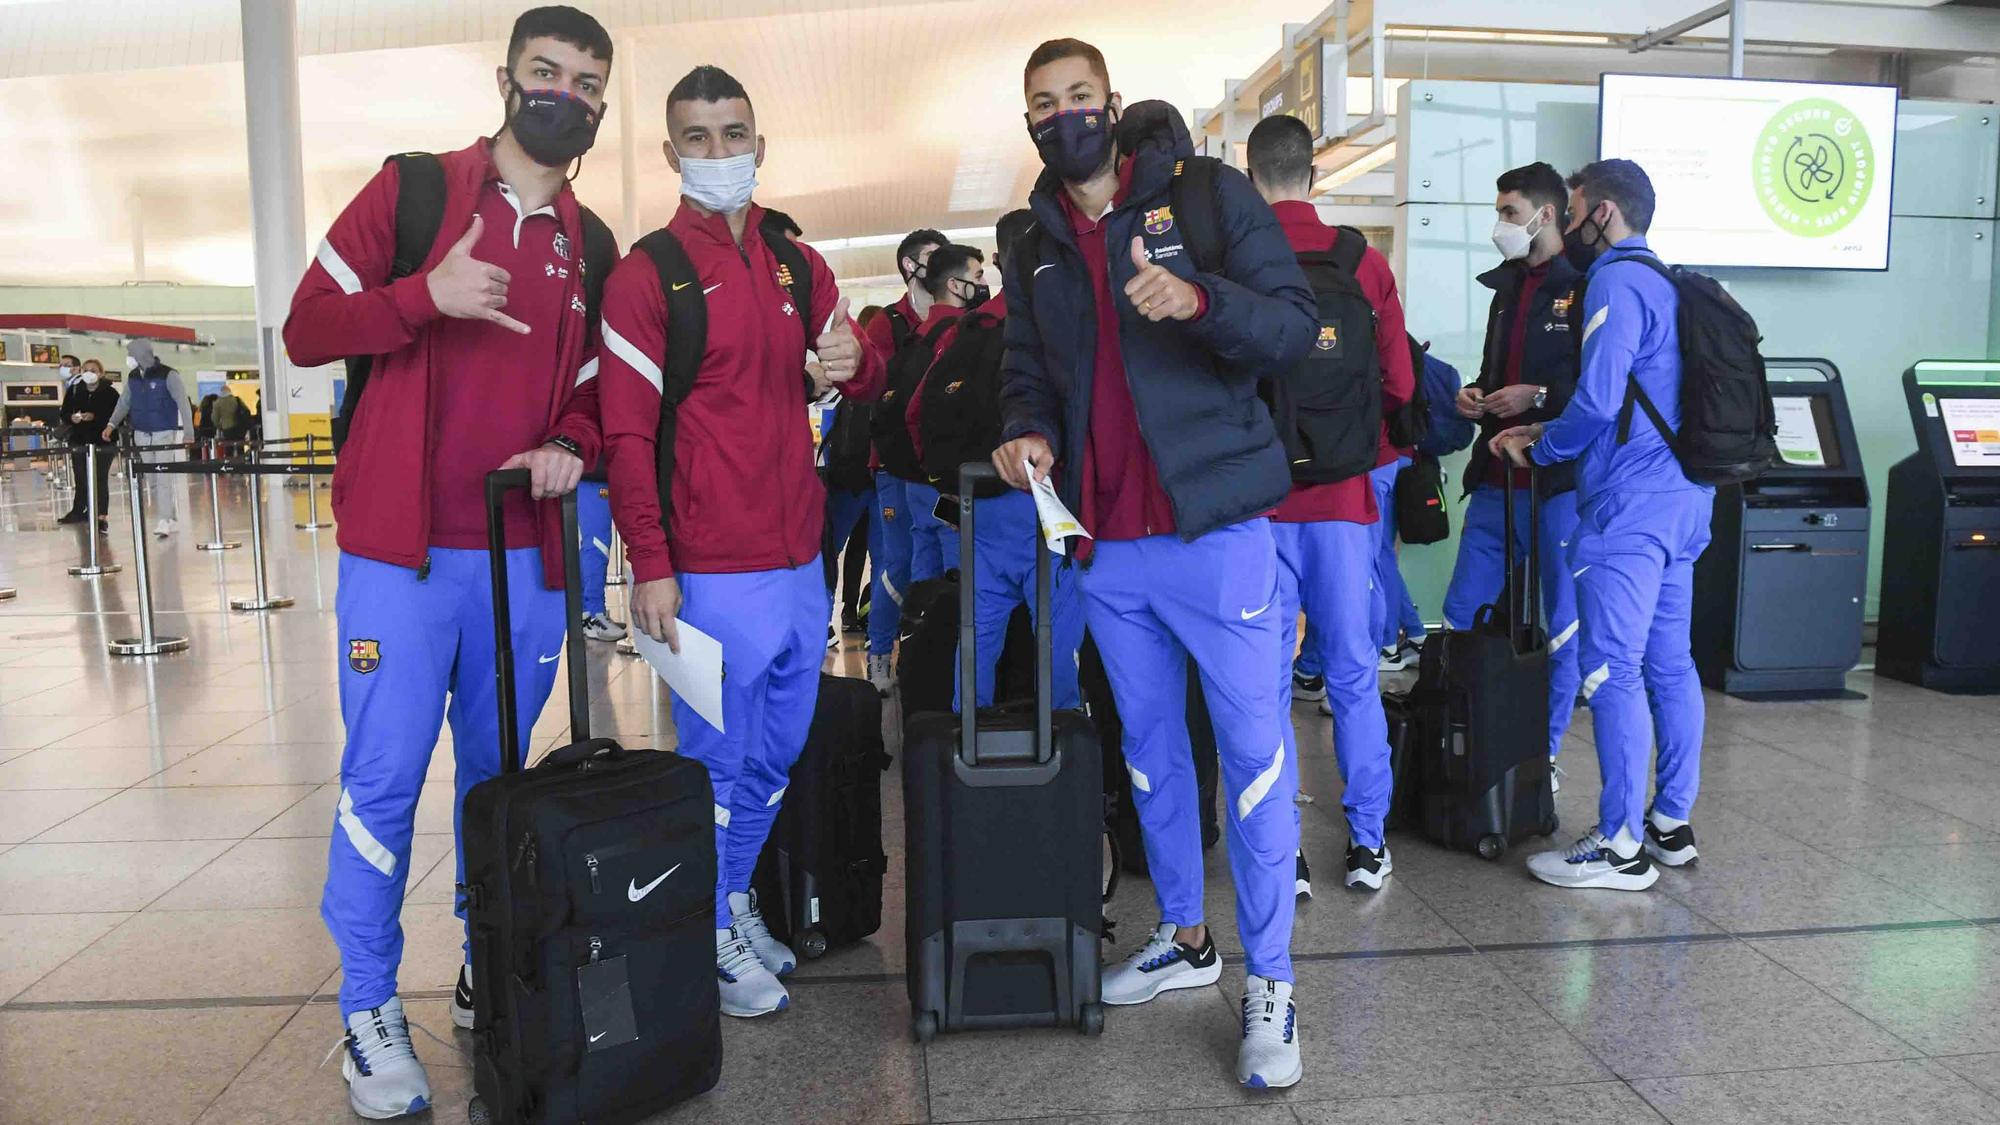 El Barça ha viajado este viernes a tierras andaluzas